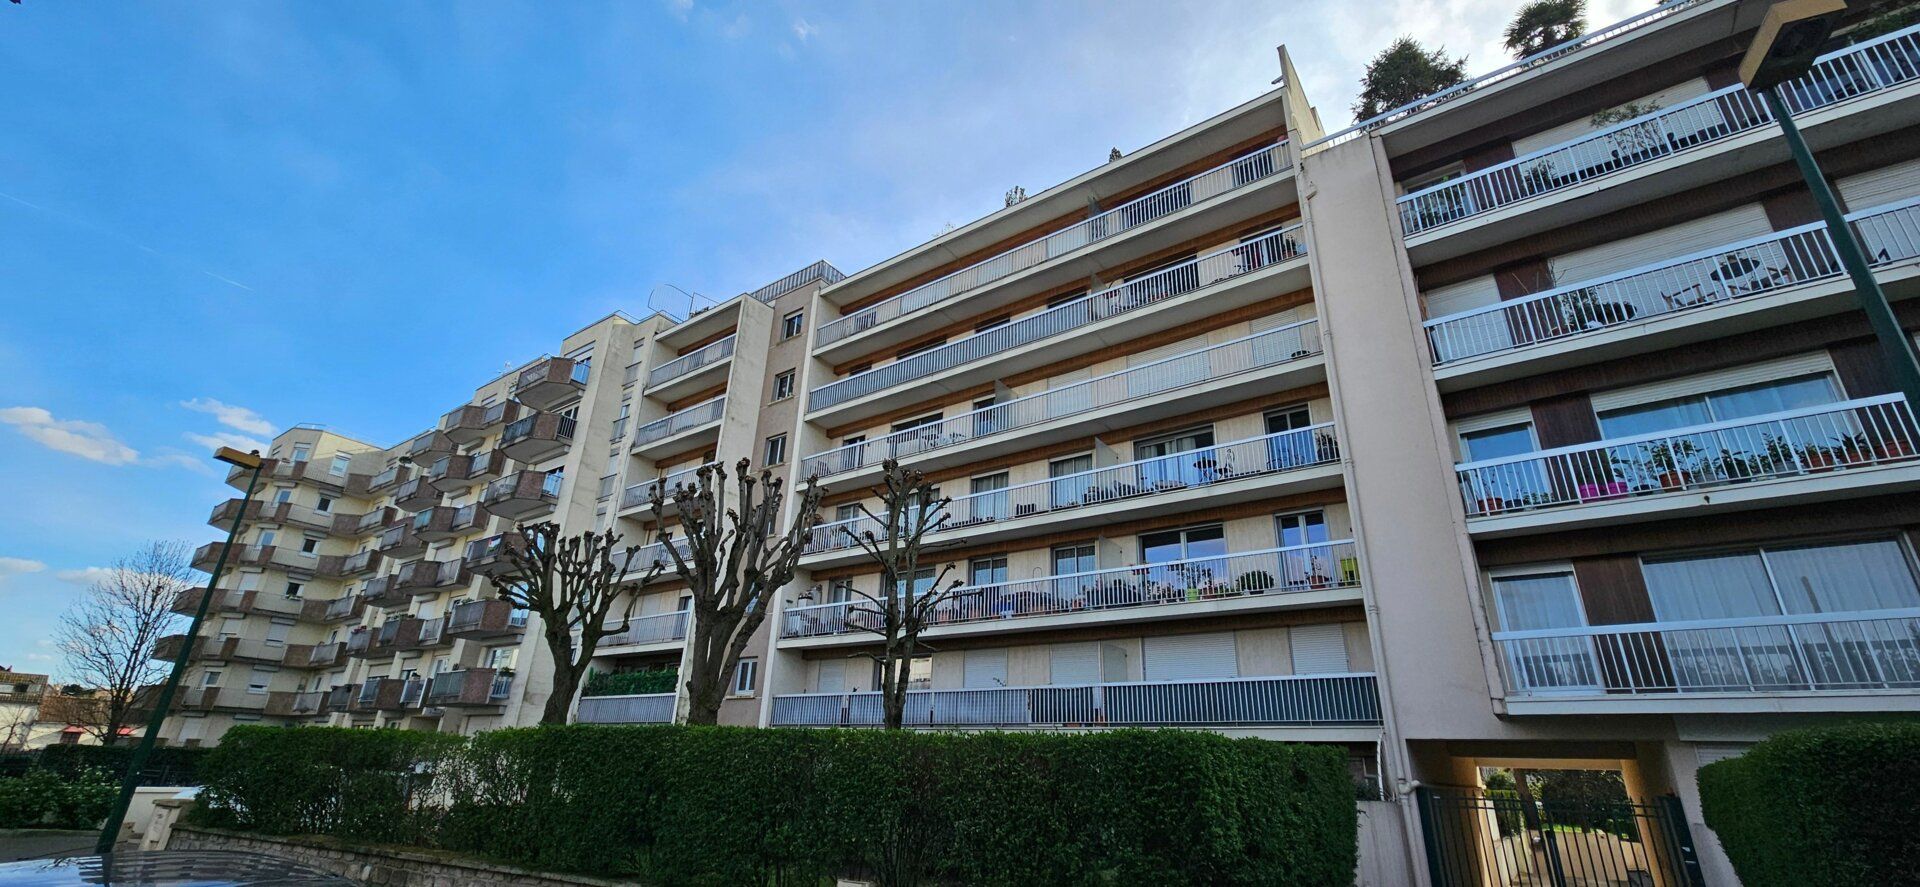 Appartement à vendre 2 62m2 à Épinay-sur-Seine vignette-1